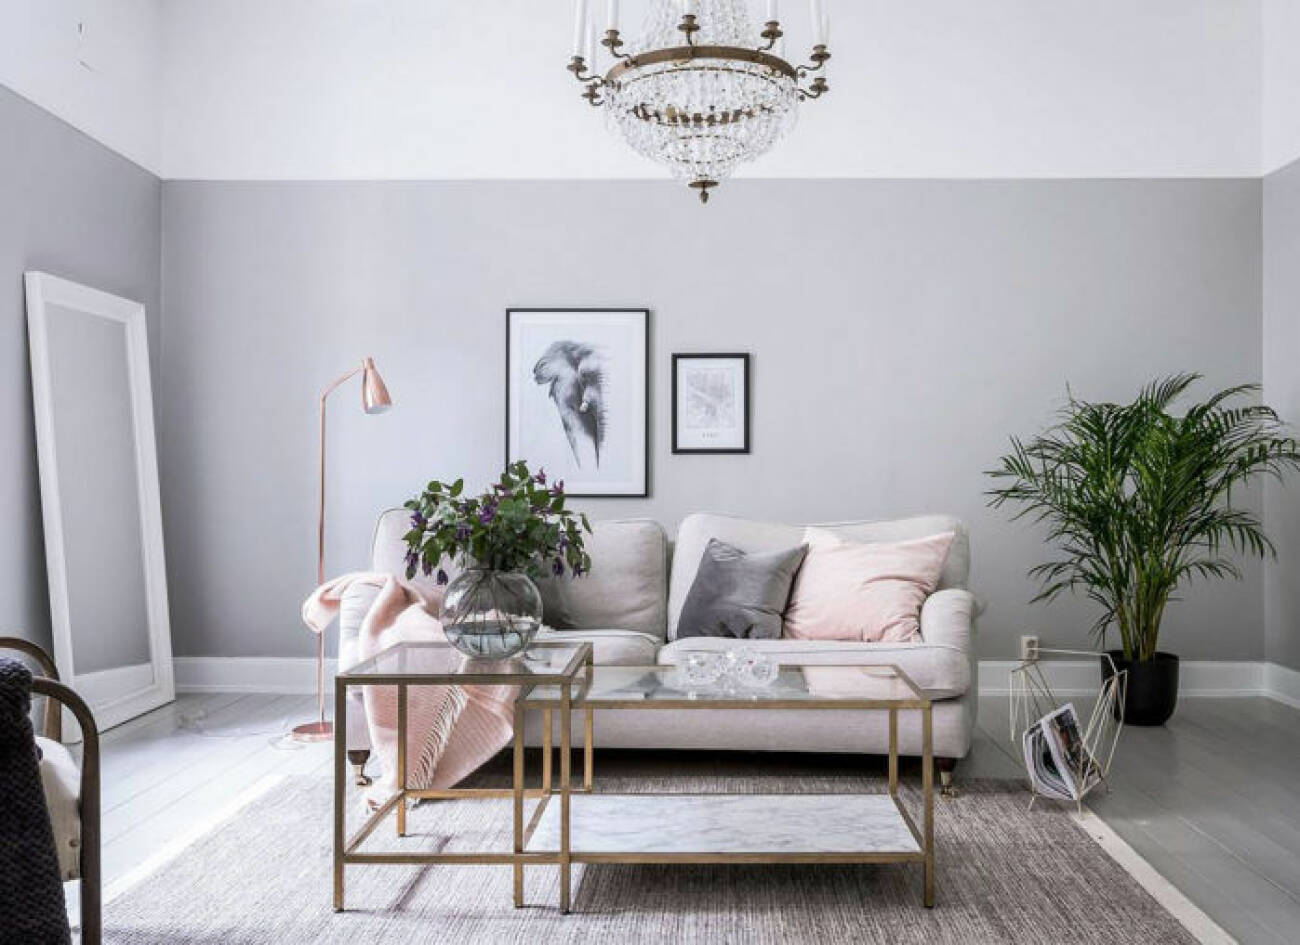 Ljusgrå väggar i vardagsrum med ljus soffa, kristallkrona och rosa prydnadskuddar.